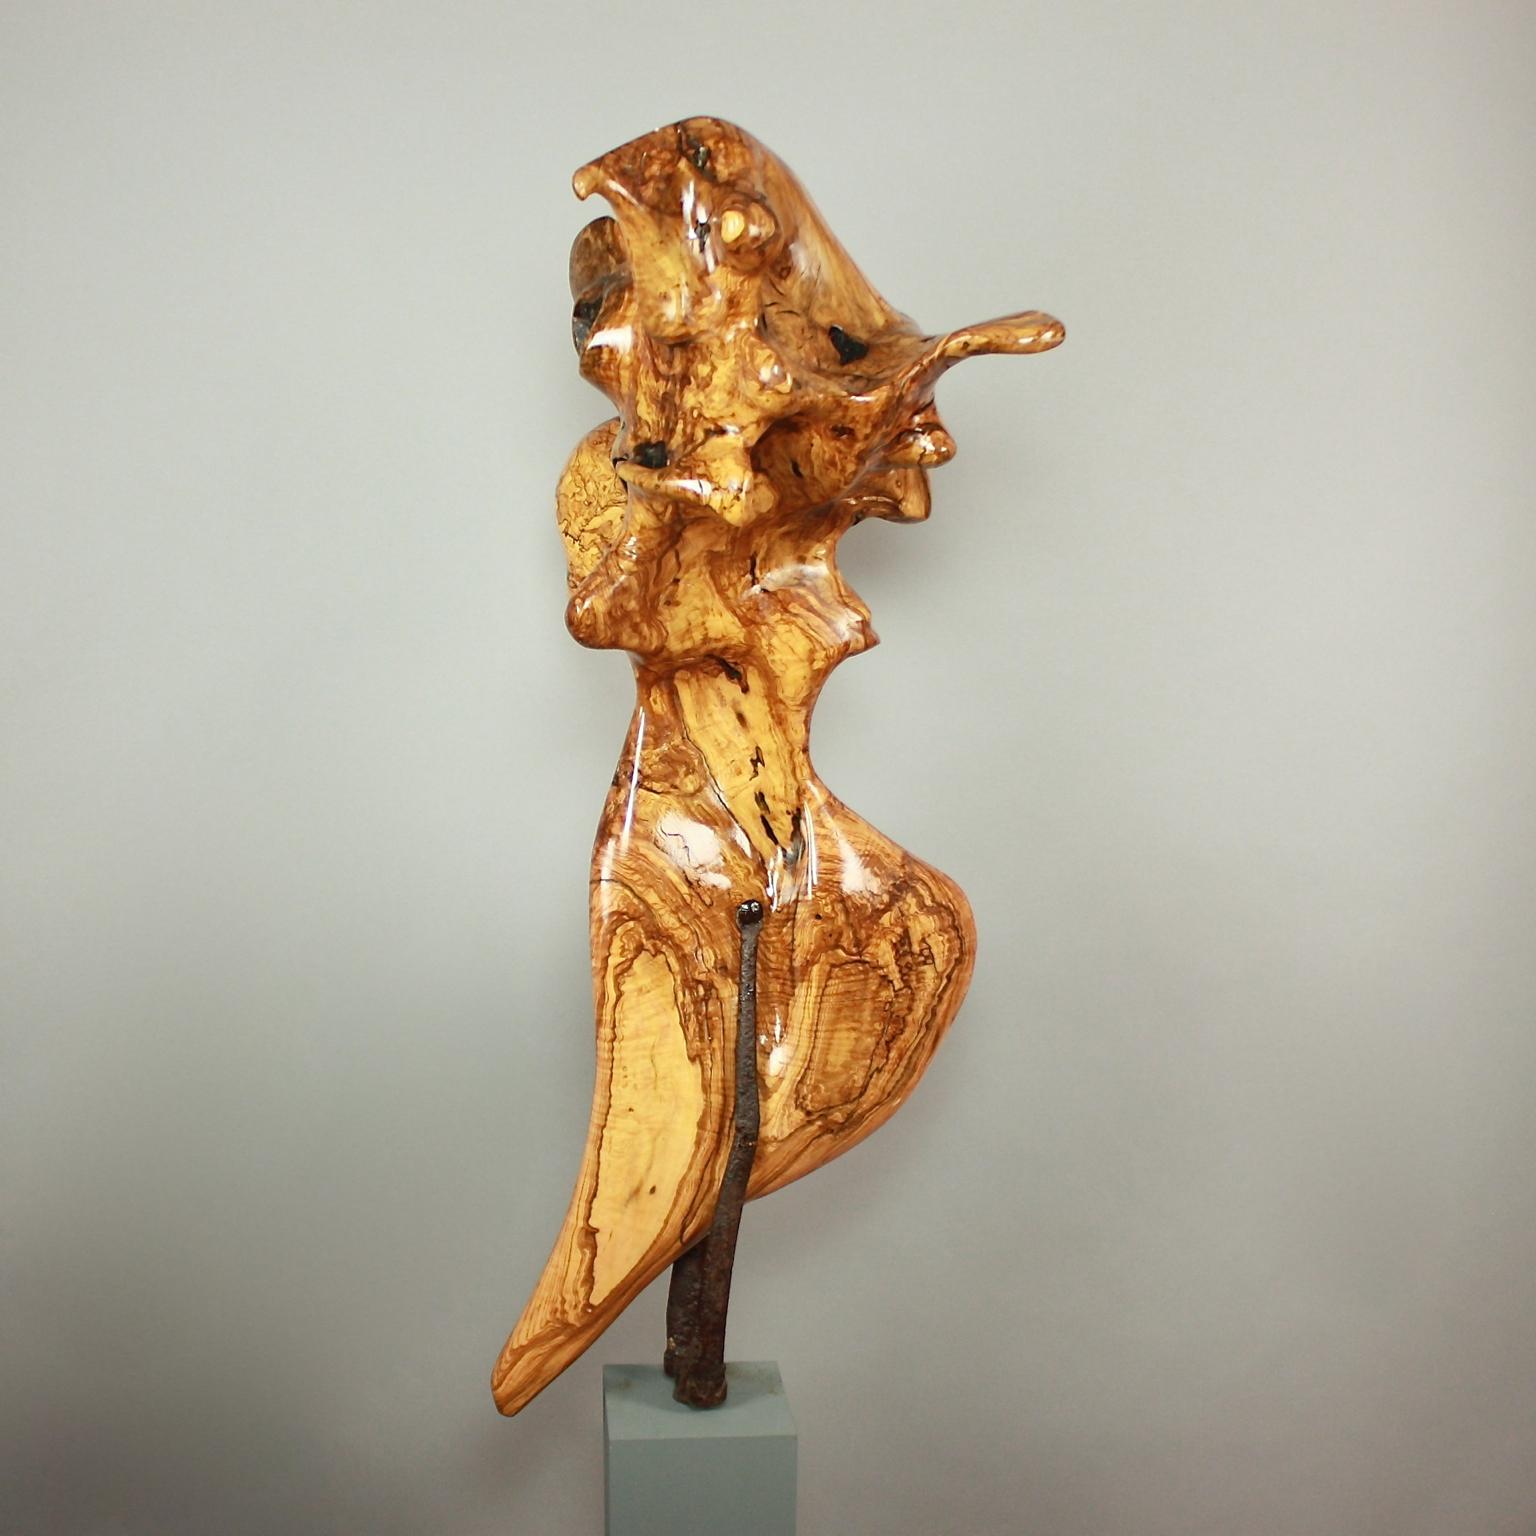 Sculpture abstraite en bois d'olivier réalisée par un artiste inconnu, probablement fin du XXe siècle ou début du XXIe siècle. En suivant le grain du bois, la sculpture offre de multiples vues de la surface polie, accentuant la vivacité du grain. La